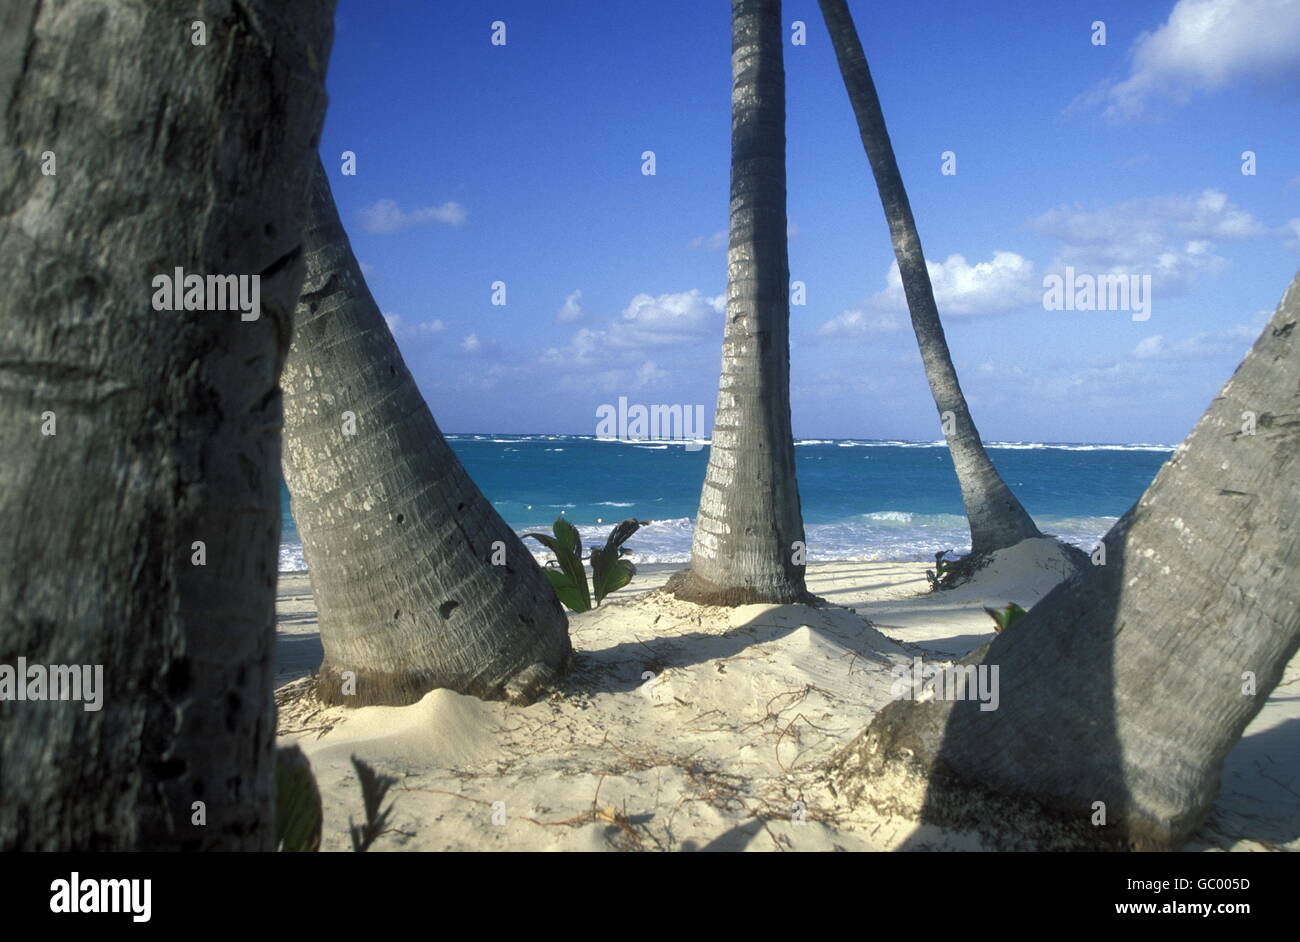 Una spiaggia presso il villaggio di Las Terrenas su Samanaon nella Repubblica Dominicana nel Mar dei Caraibi in America Latina. Foto Stock